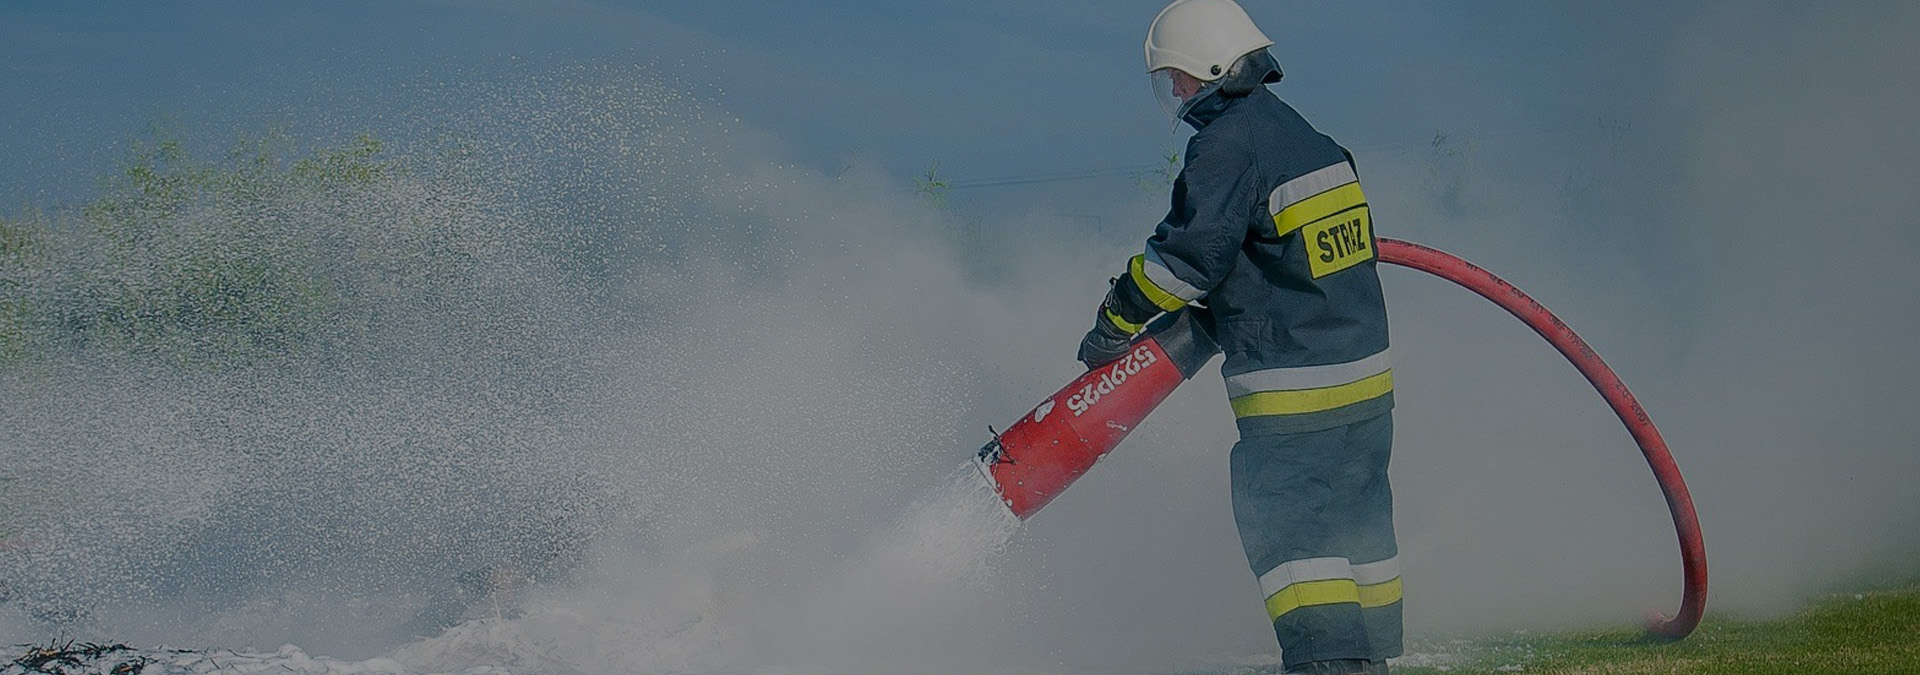 Firma exP-Poż <br> Doradztwo i usługi  w zakresie ochrony przeciwpożarowej